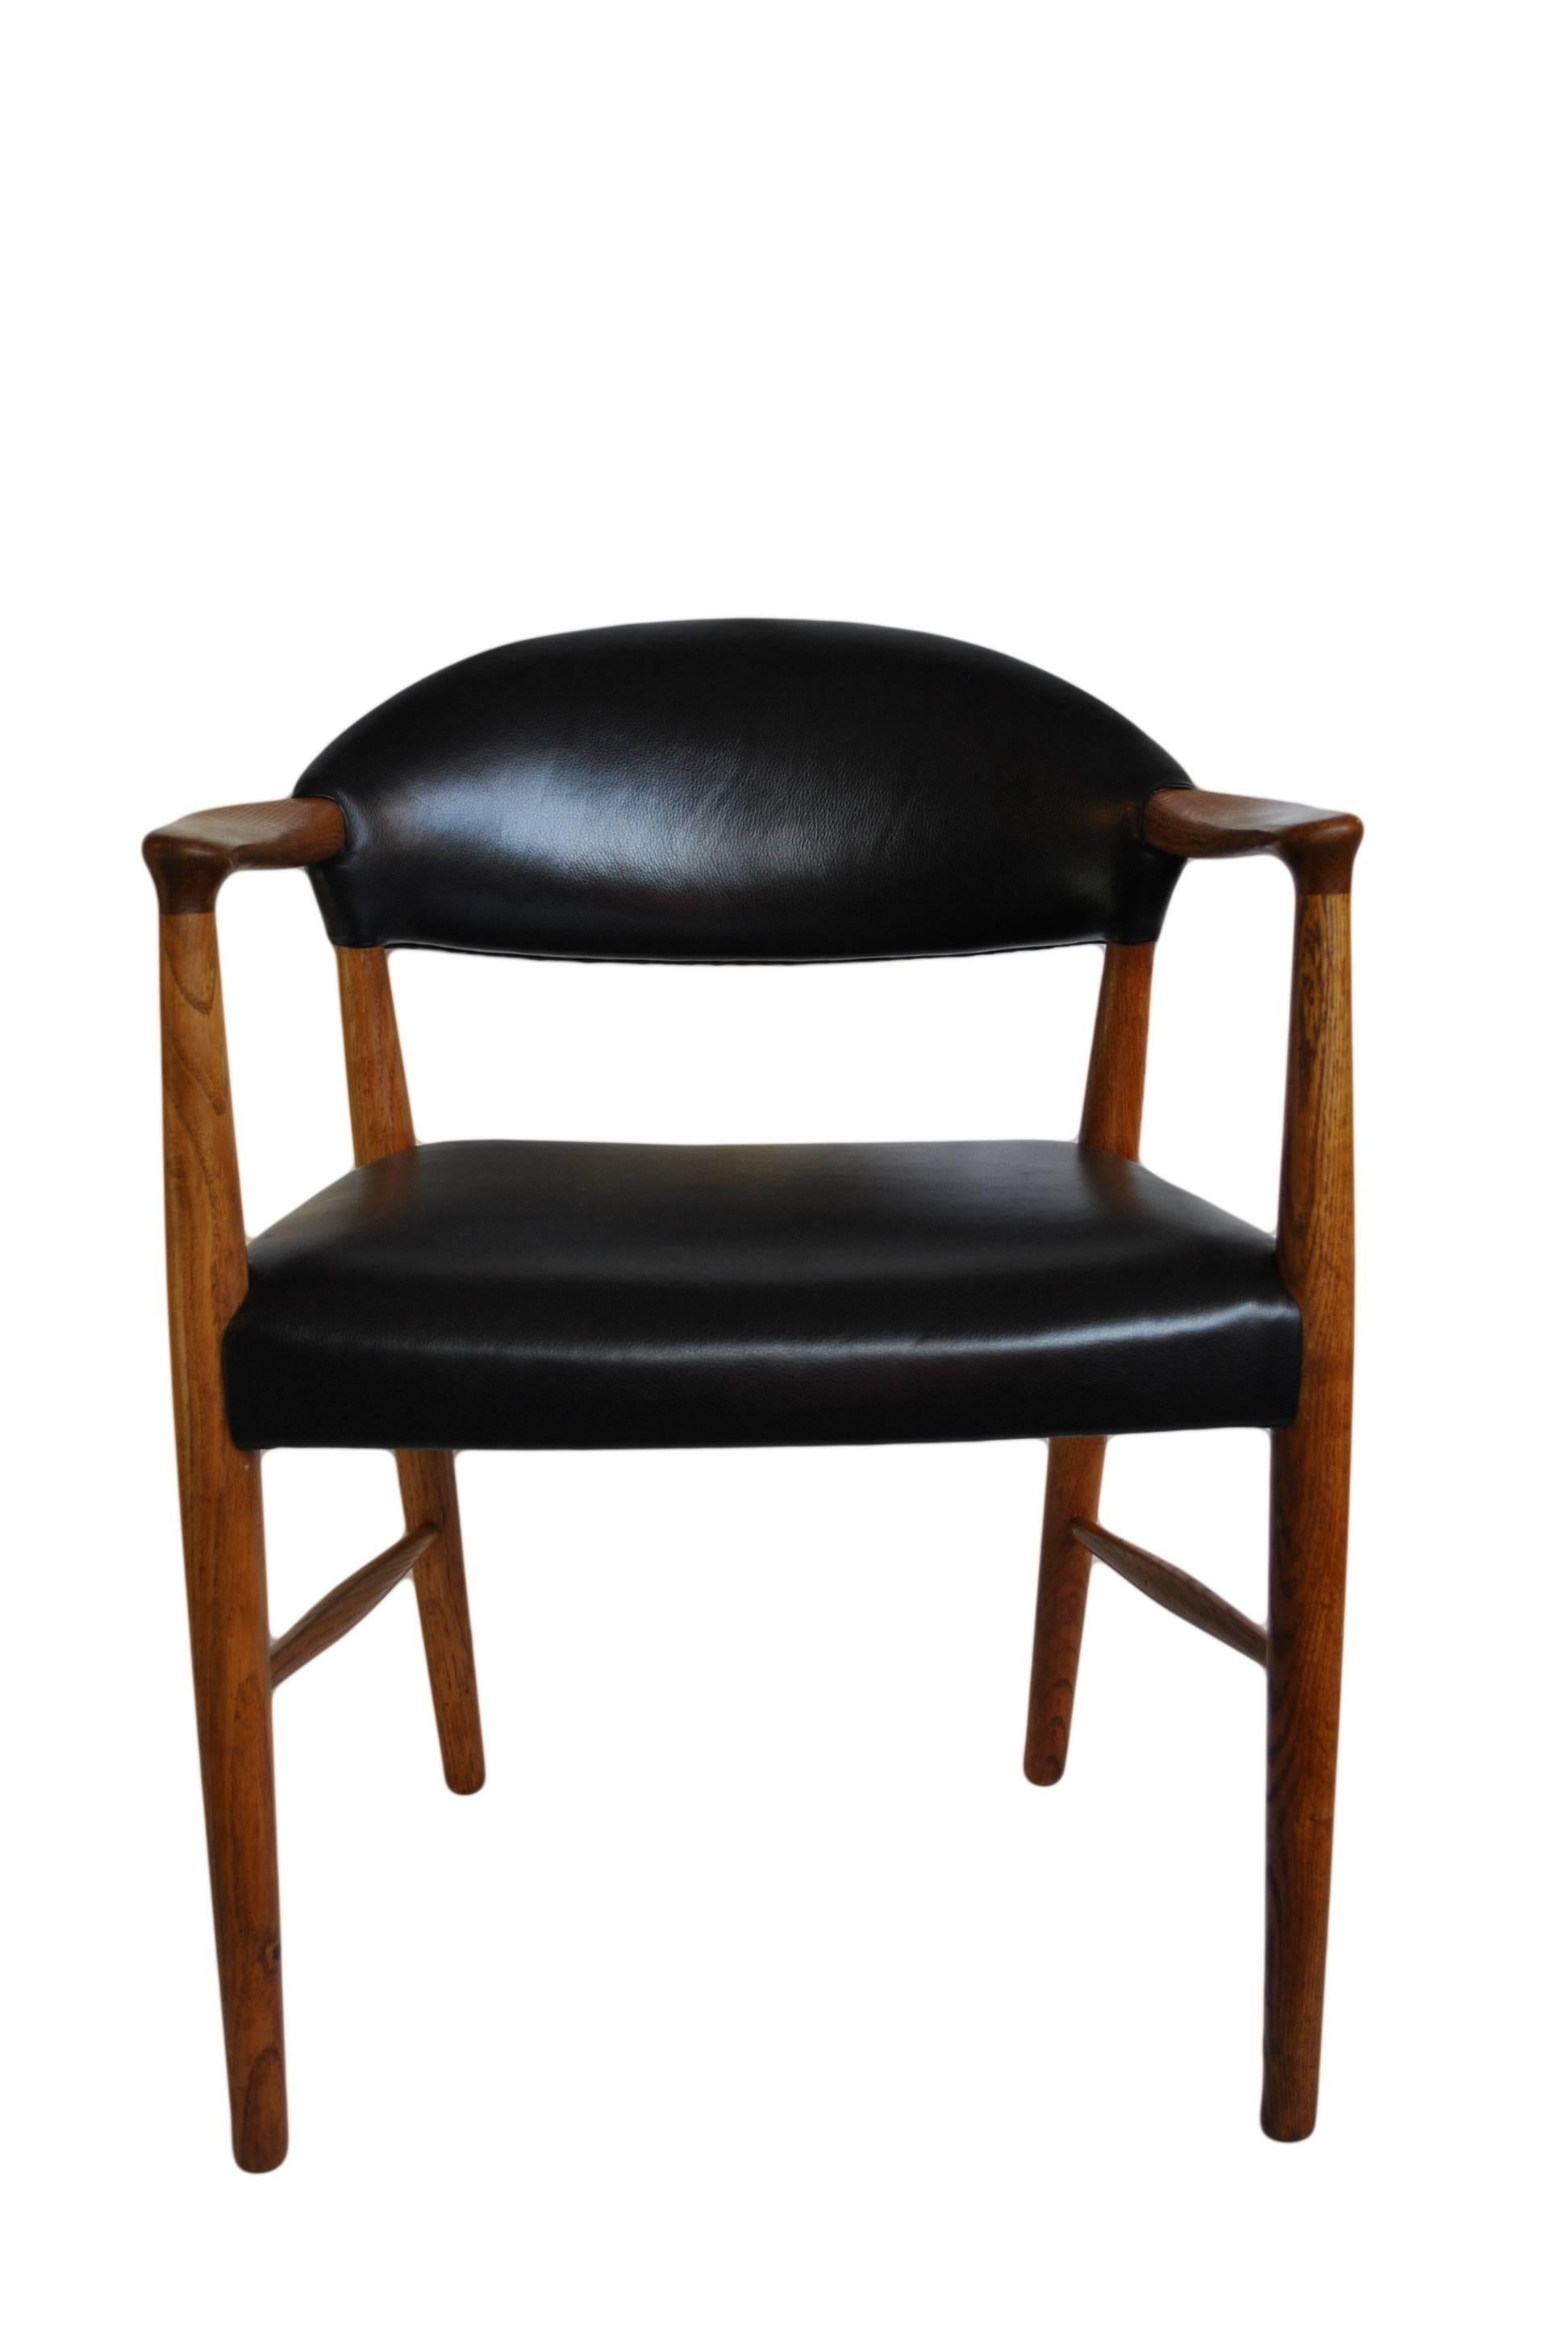 Mid-Century Modern Kurt Olsen chair, fully reupholstered in black leather.